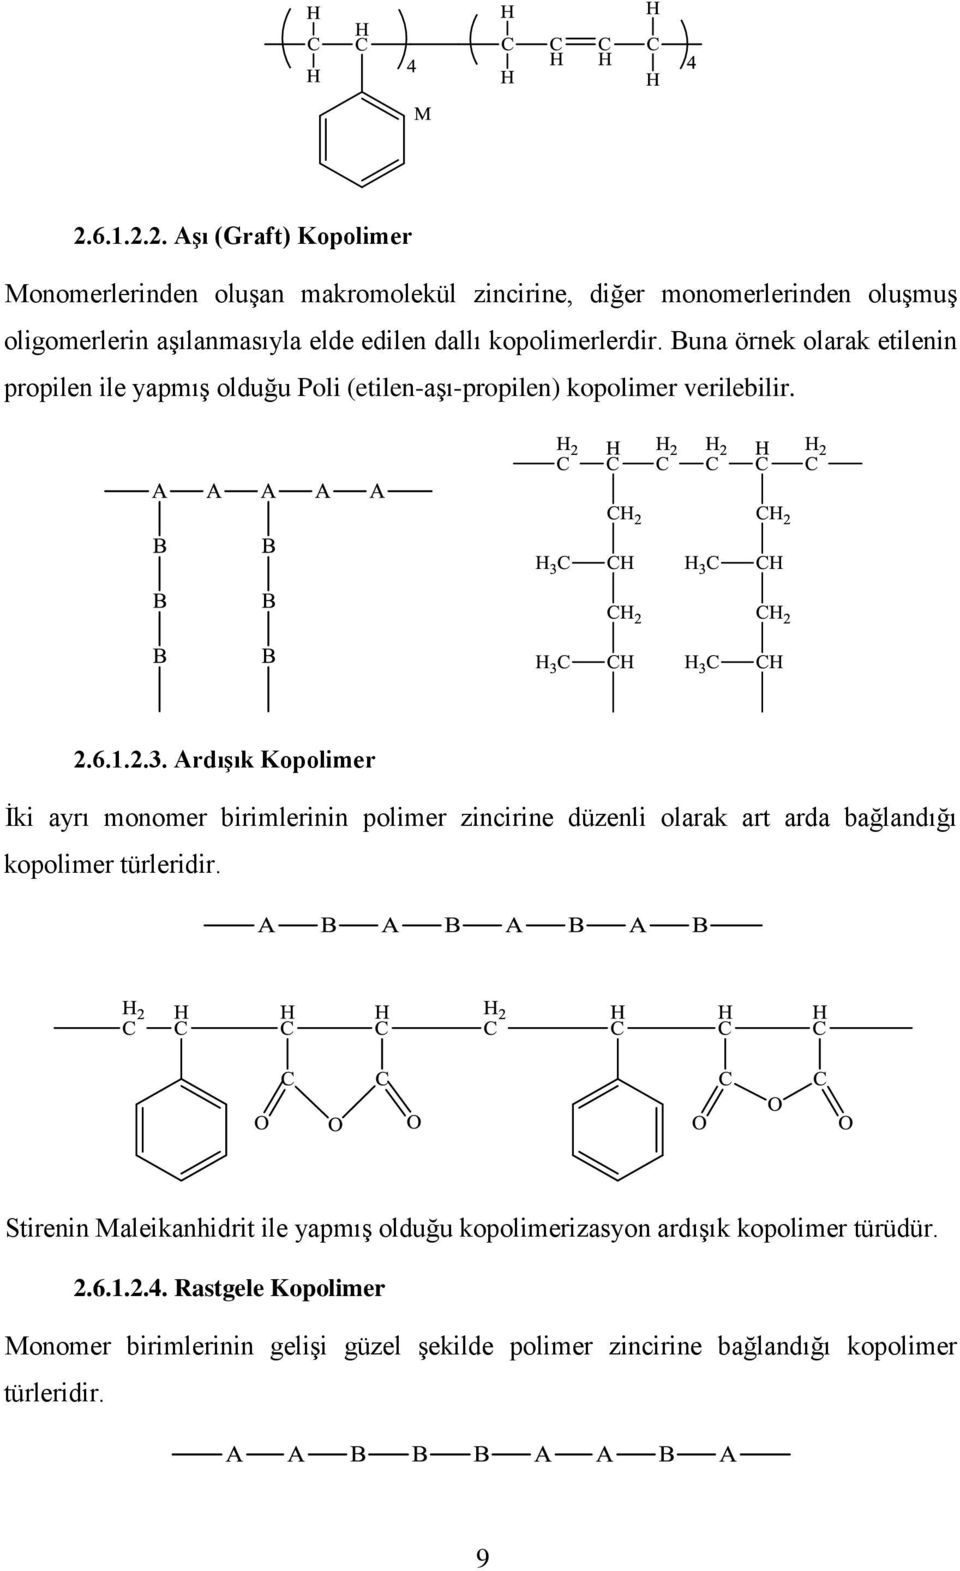 Ardışık Kopolimer İki ayrı monomer birimlerinin polimer zincirine düzenli olarak art arda bağlandığı kopolimer türleridir.